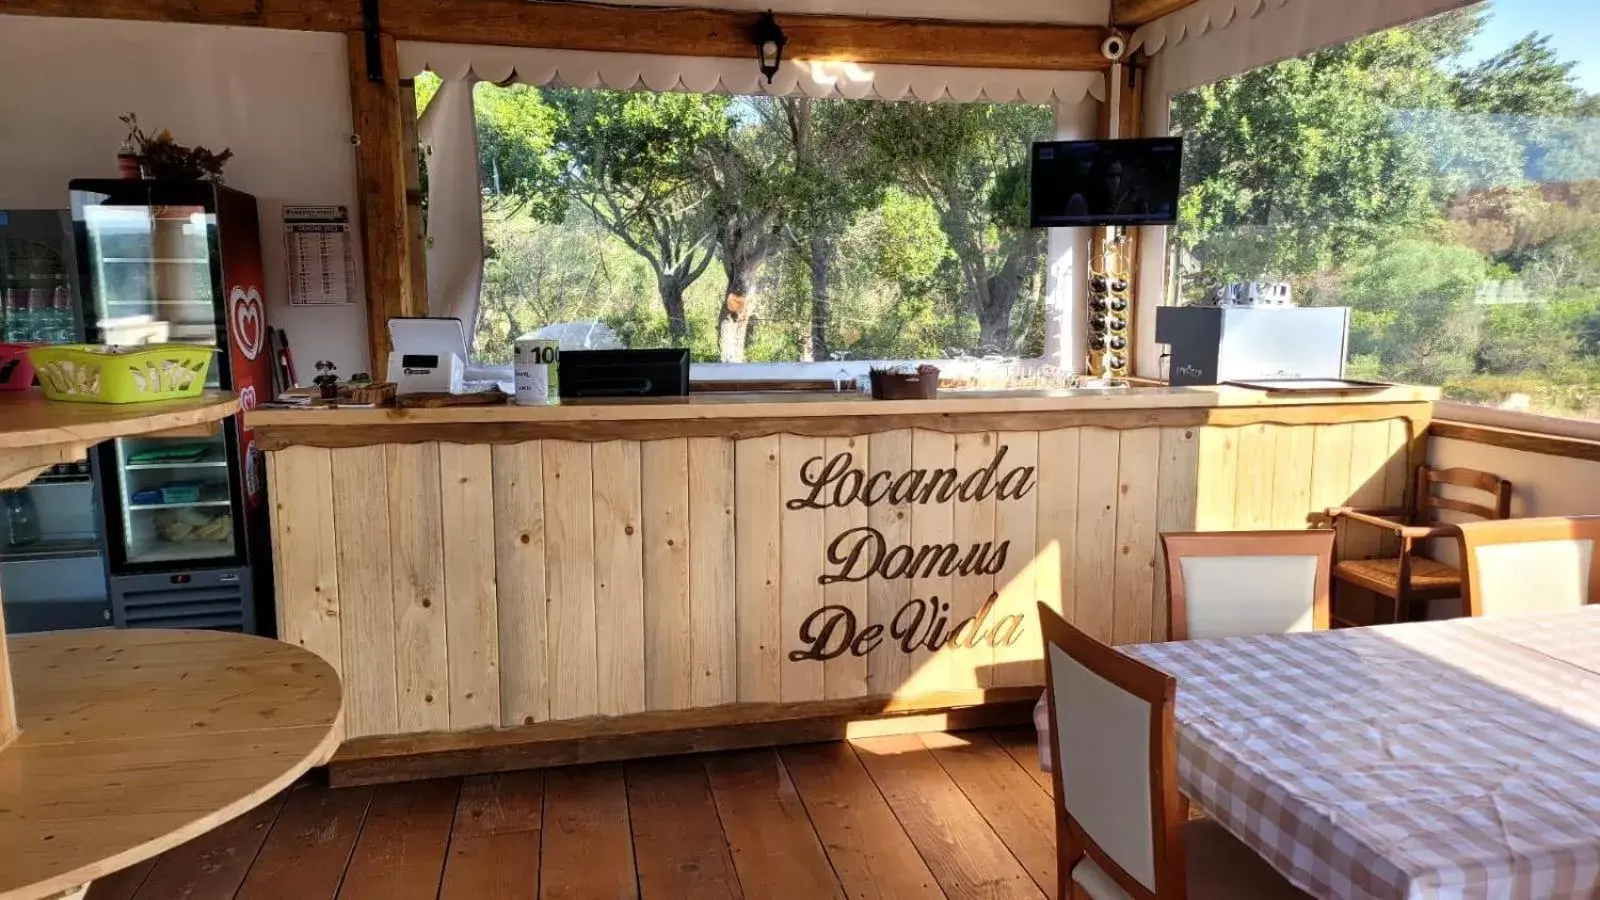 Restaurant/places to eat in Locanda Domus De Vida Turismo Rurale